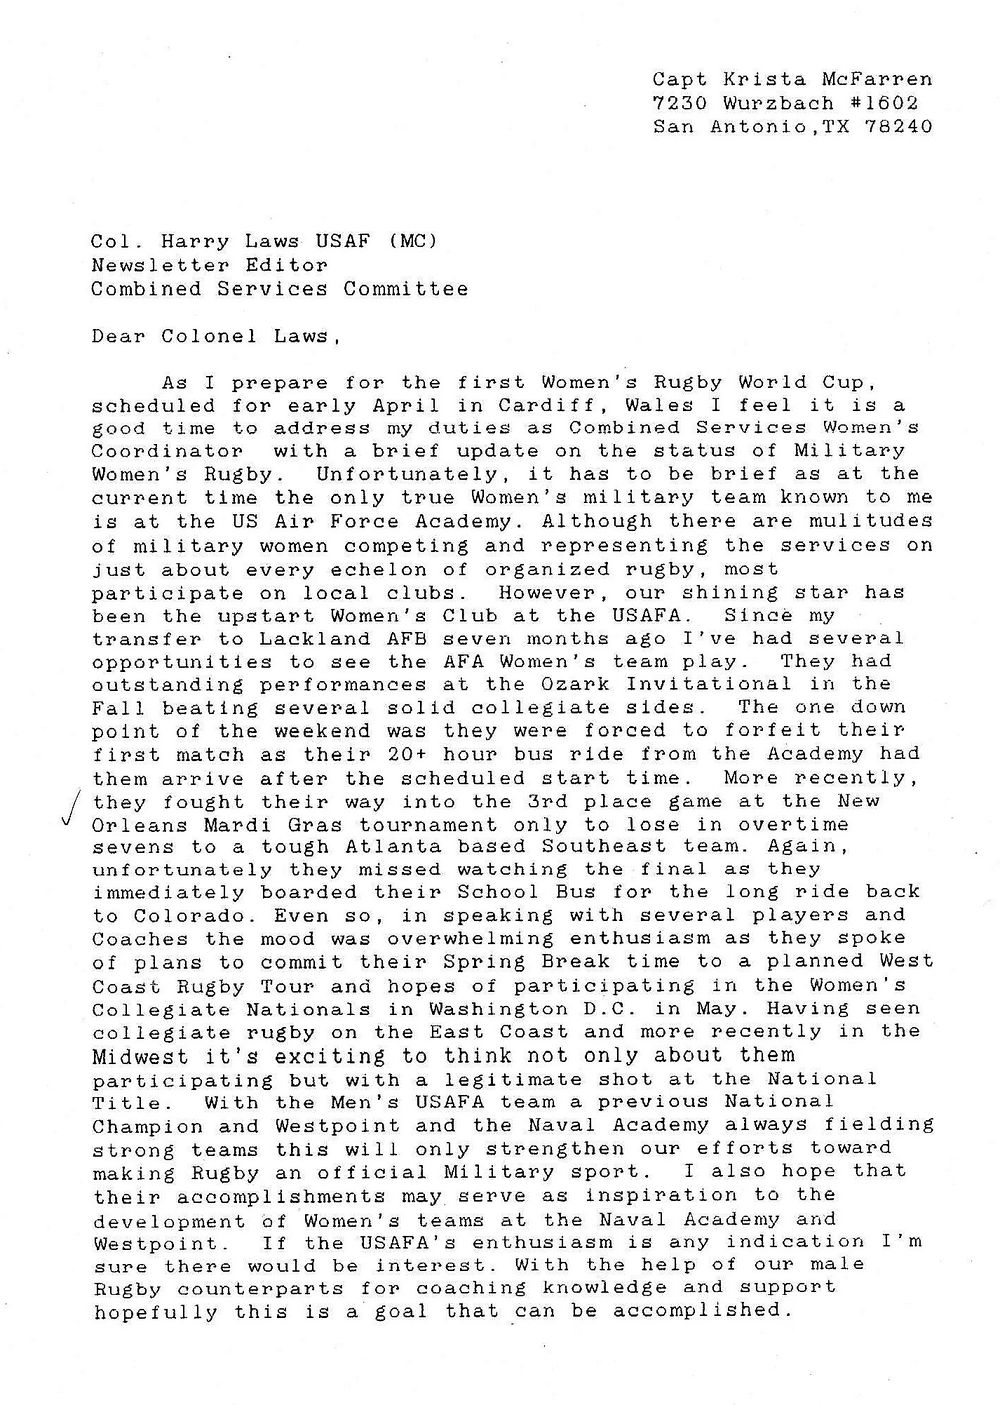 1991 Spring Mcfarren letter 1.jpg